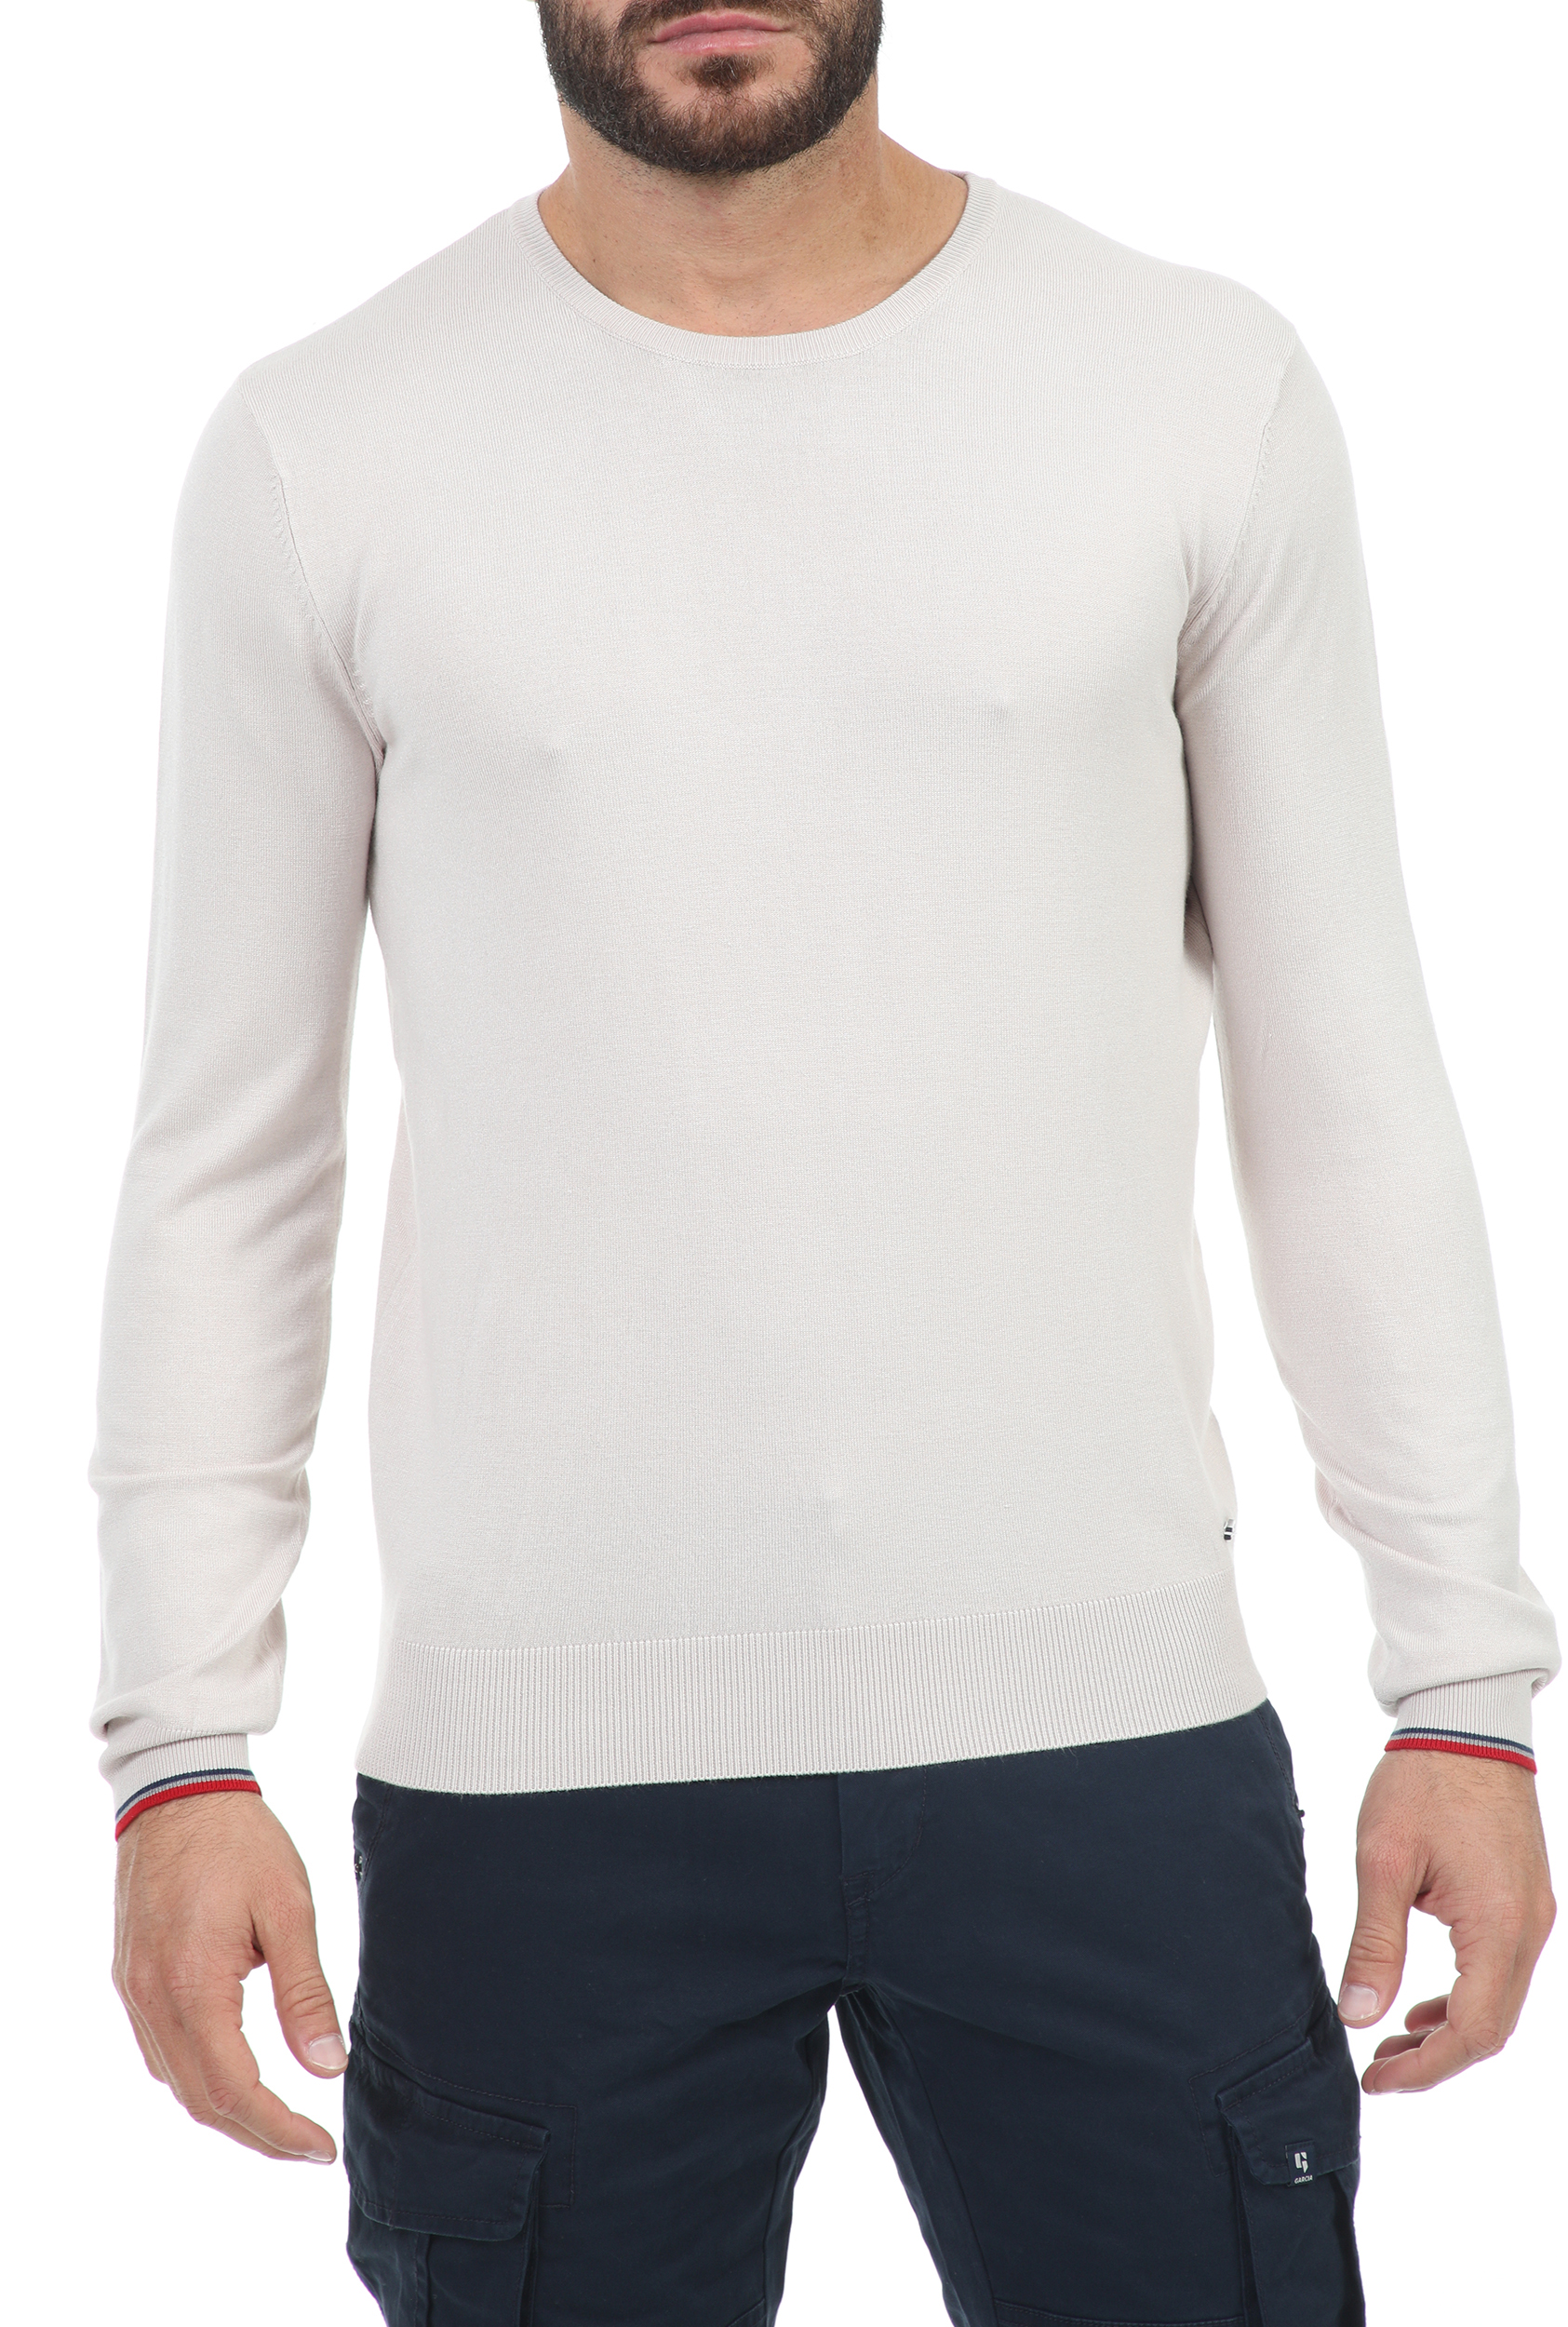 Ανδρικά/Ρούχα/Πλεκτά-Ζακέτες/Μπλούζες GAUDI - Ανδρική πλεκτή μπλούζα GAUDI μπεζ